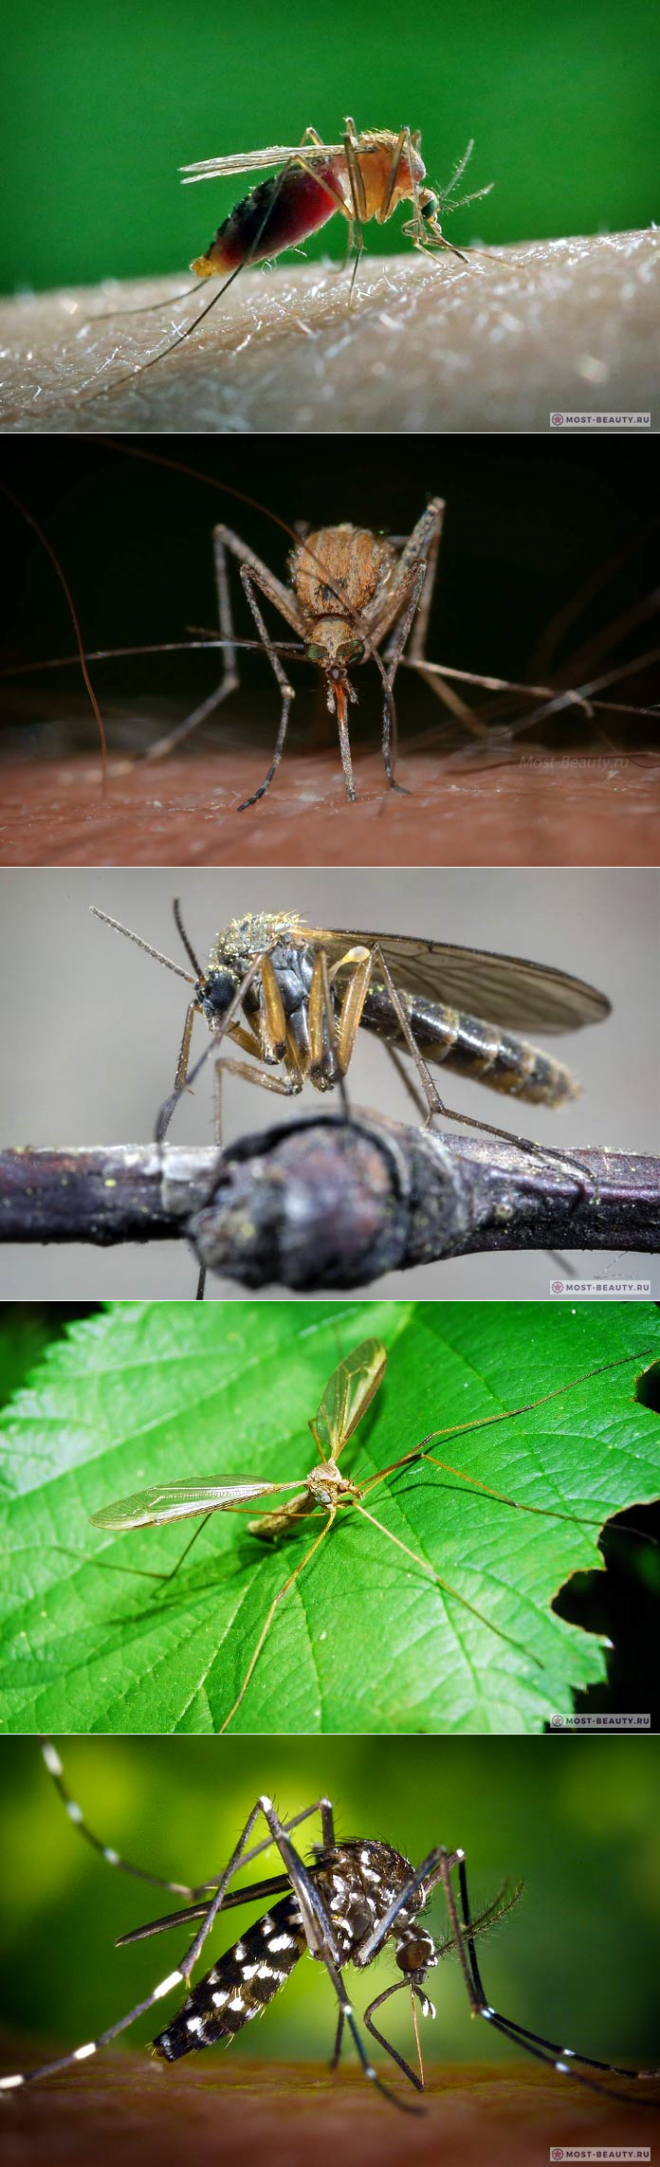 Кровососущие комары — википедия переиздание // wiki 2